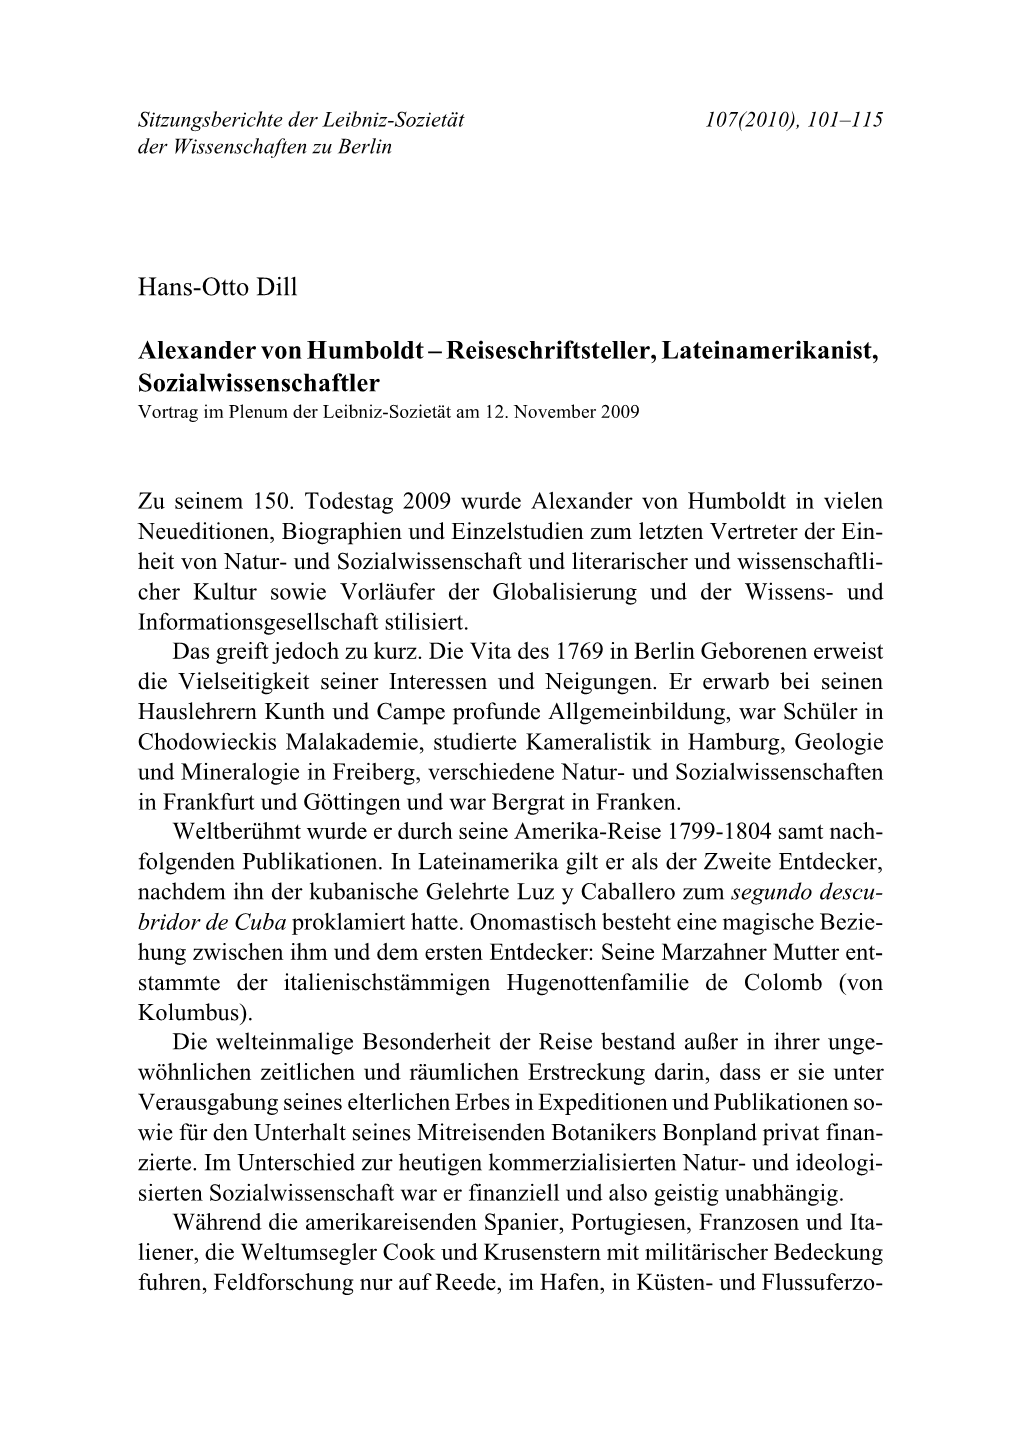 Alexander Von Humboldt – Reiseschriftsteller, Lateinamerikanist, Sozialwissenschaftler Vortrag Im Plenum Der Leibniz-Sozietät Am 12